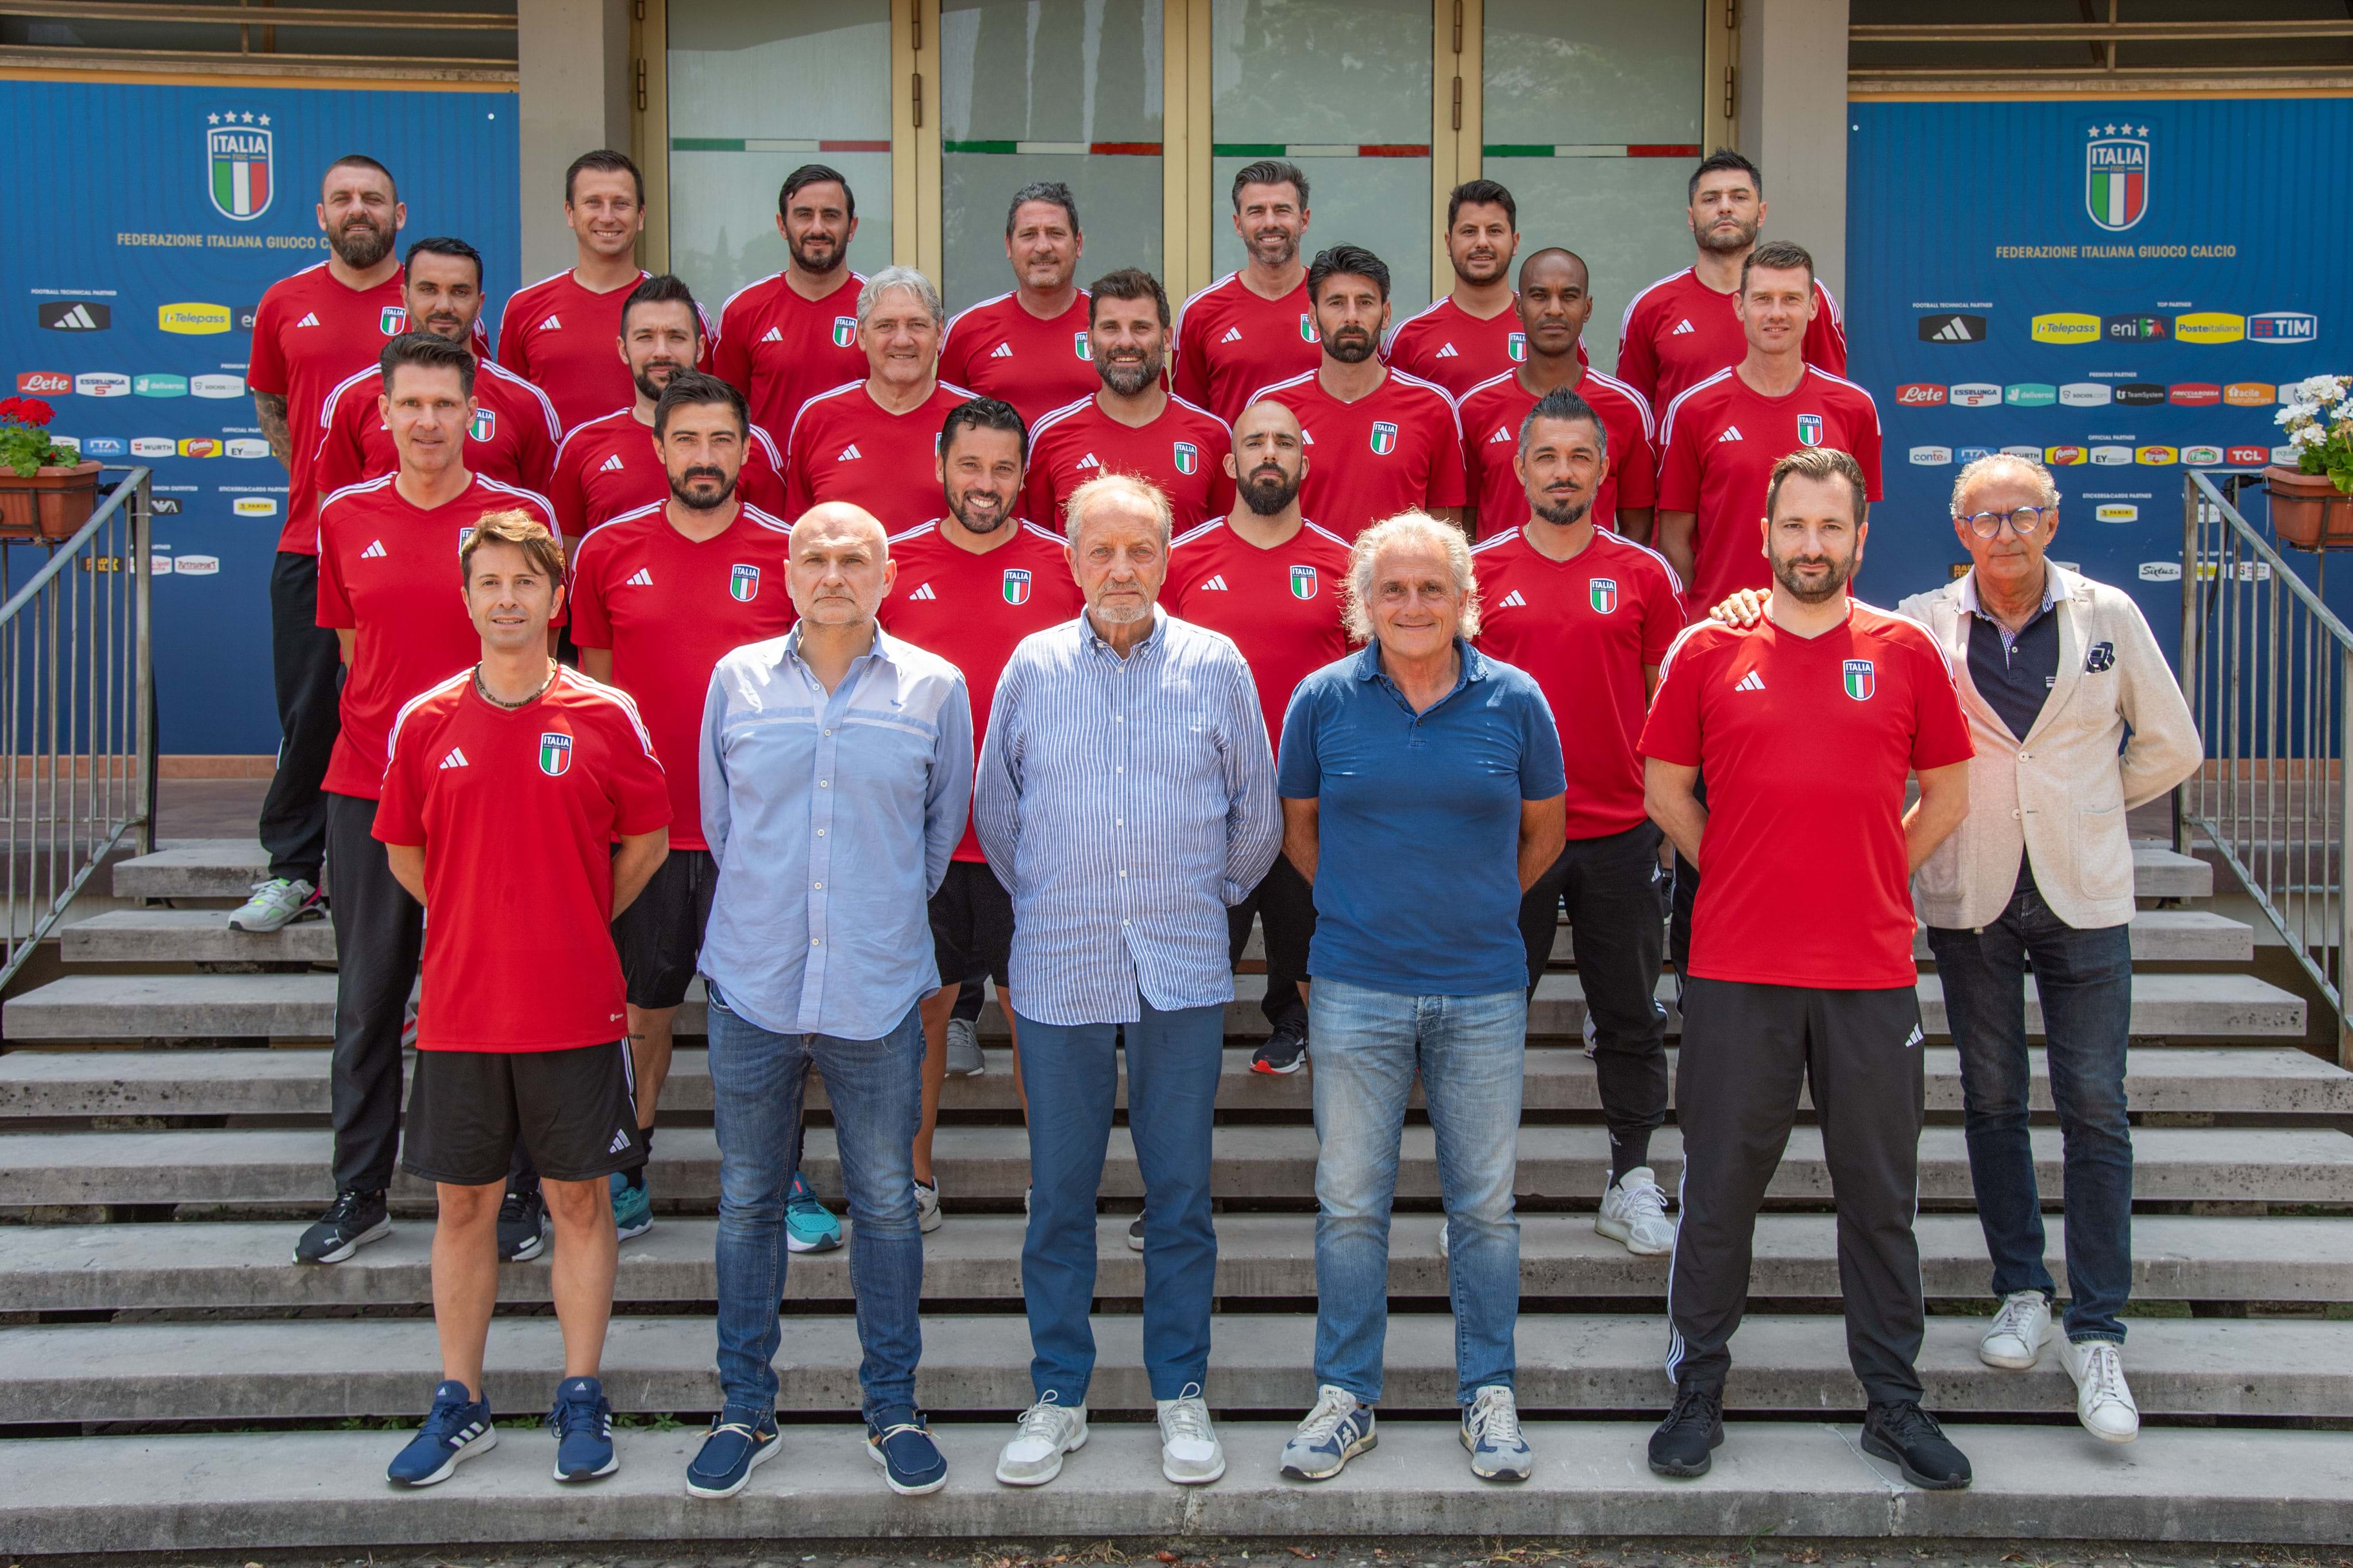 Masters de un año: las lecciones del curso UEFA Pro concluyen en Coverciano después de cuatro aprendices e ilustres profesores